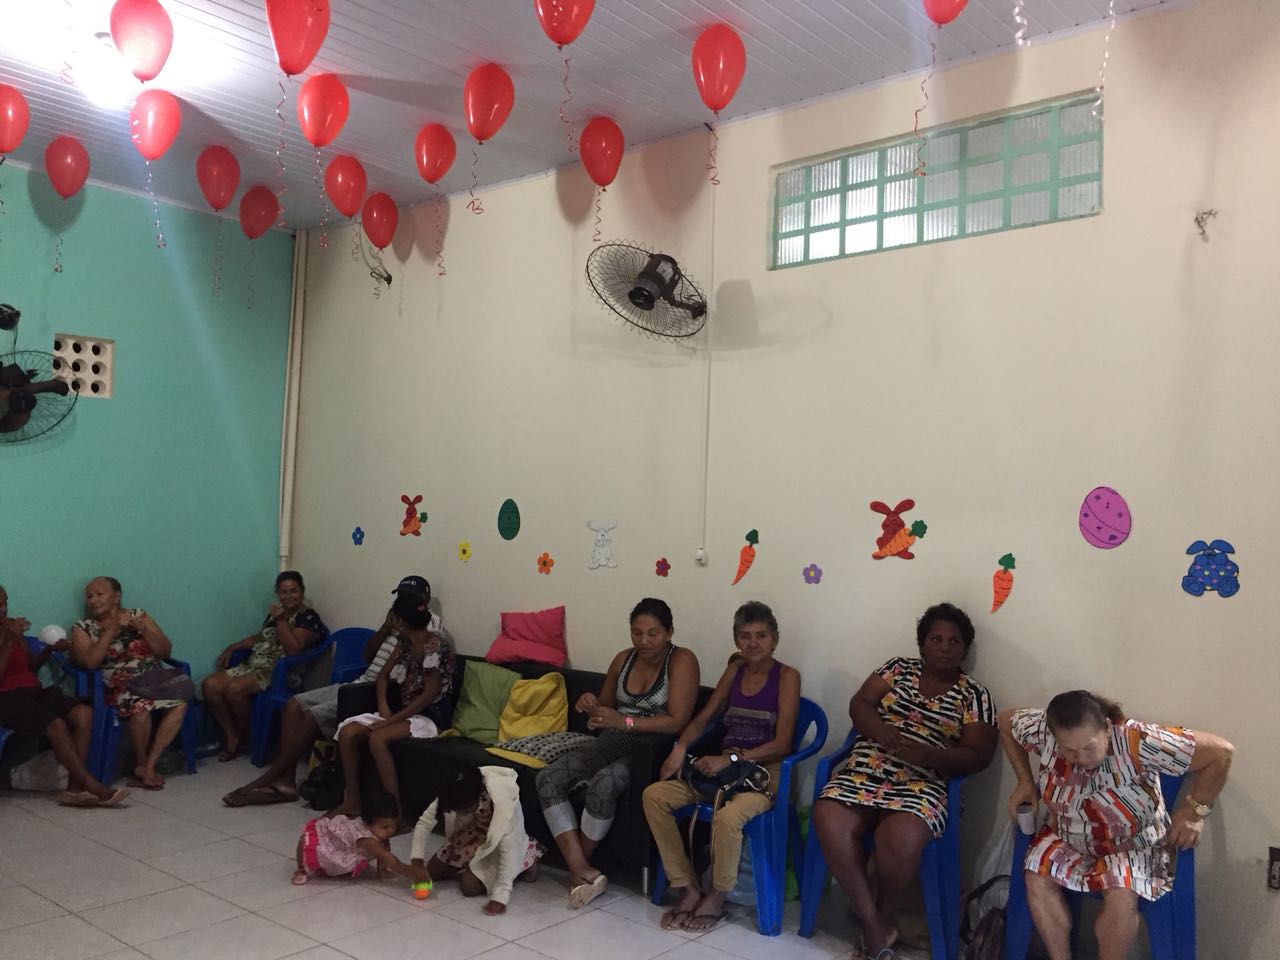 CRAS IRMÃ DOROTHY AMPLIA SERVIÇOS PARA MELHOR ATENDER A COMUNIDADE - News Rondônia